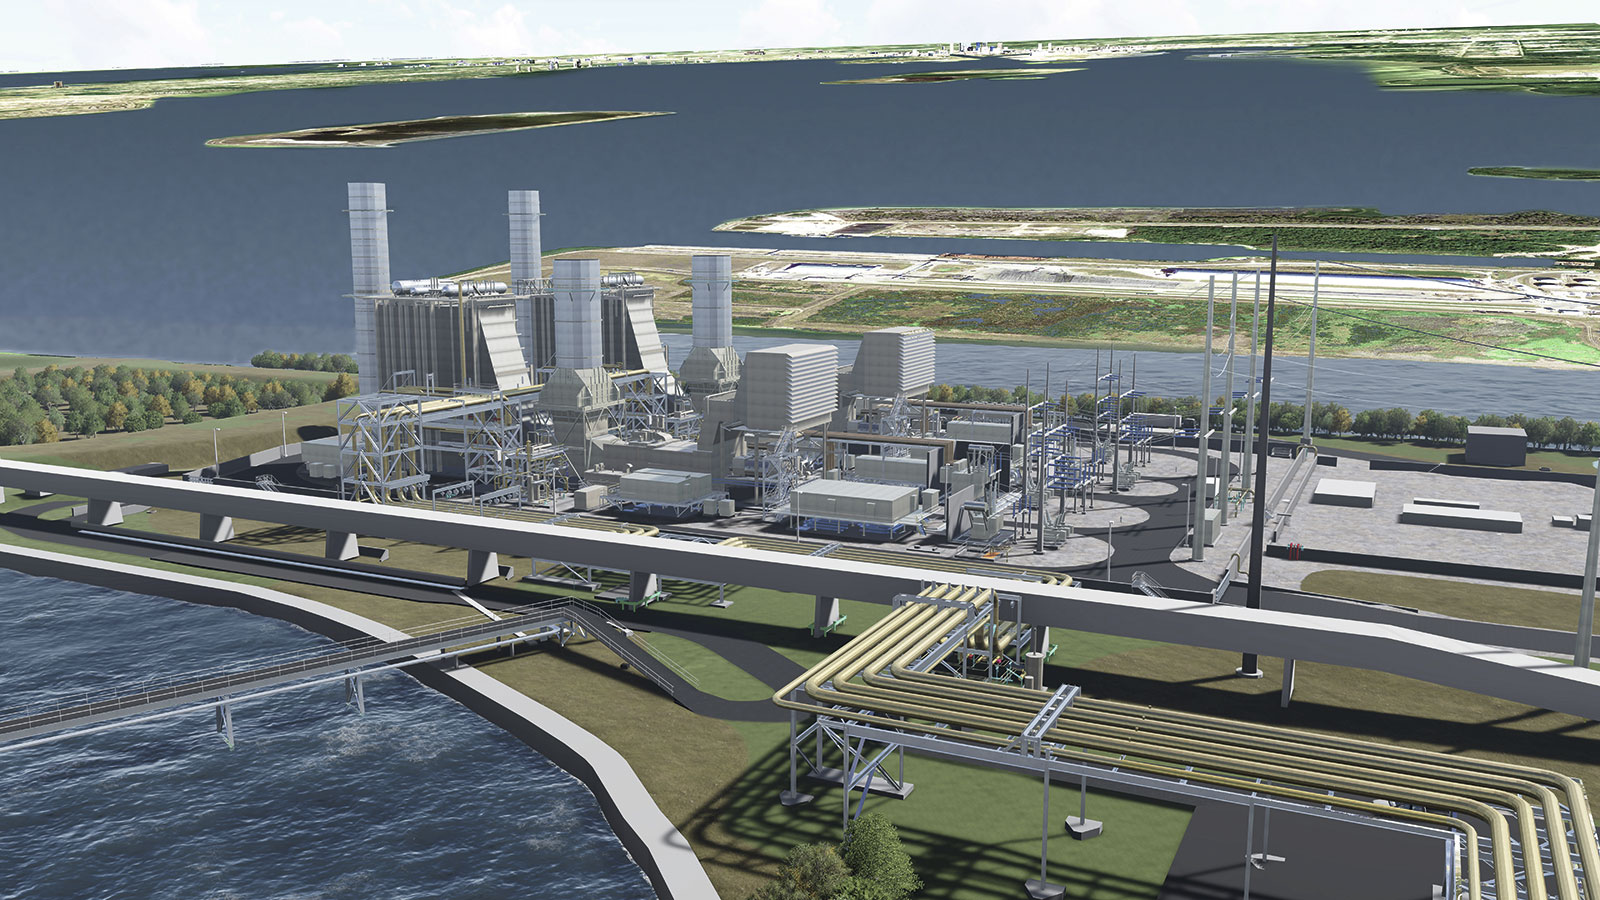 Инновационные технологии и эффективное сотрудничество обеспечивают модернизацию 
электростанции Big Bend в г.Тампа (шт.Флорида)
Изображение предоставлено компанией Sargent & Lundy